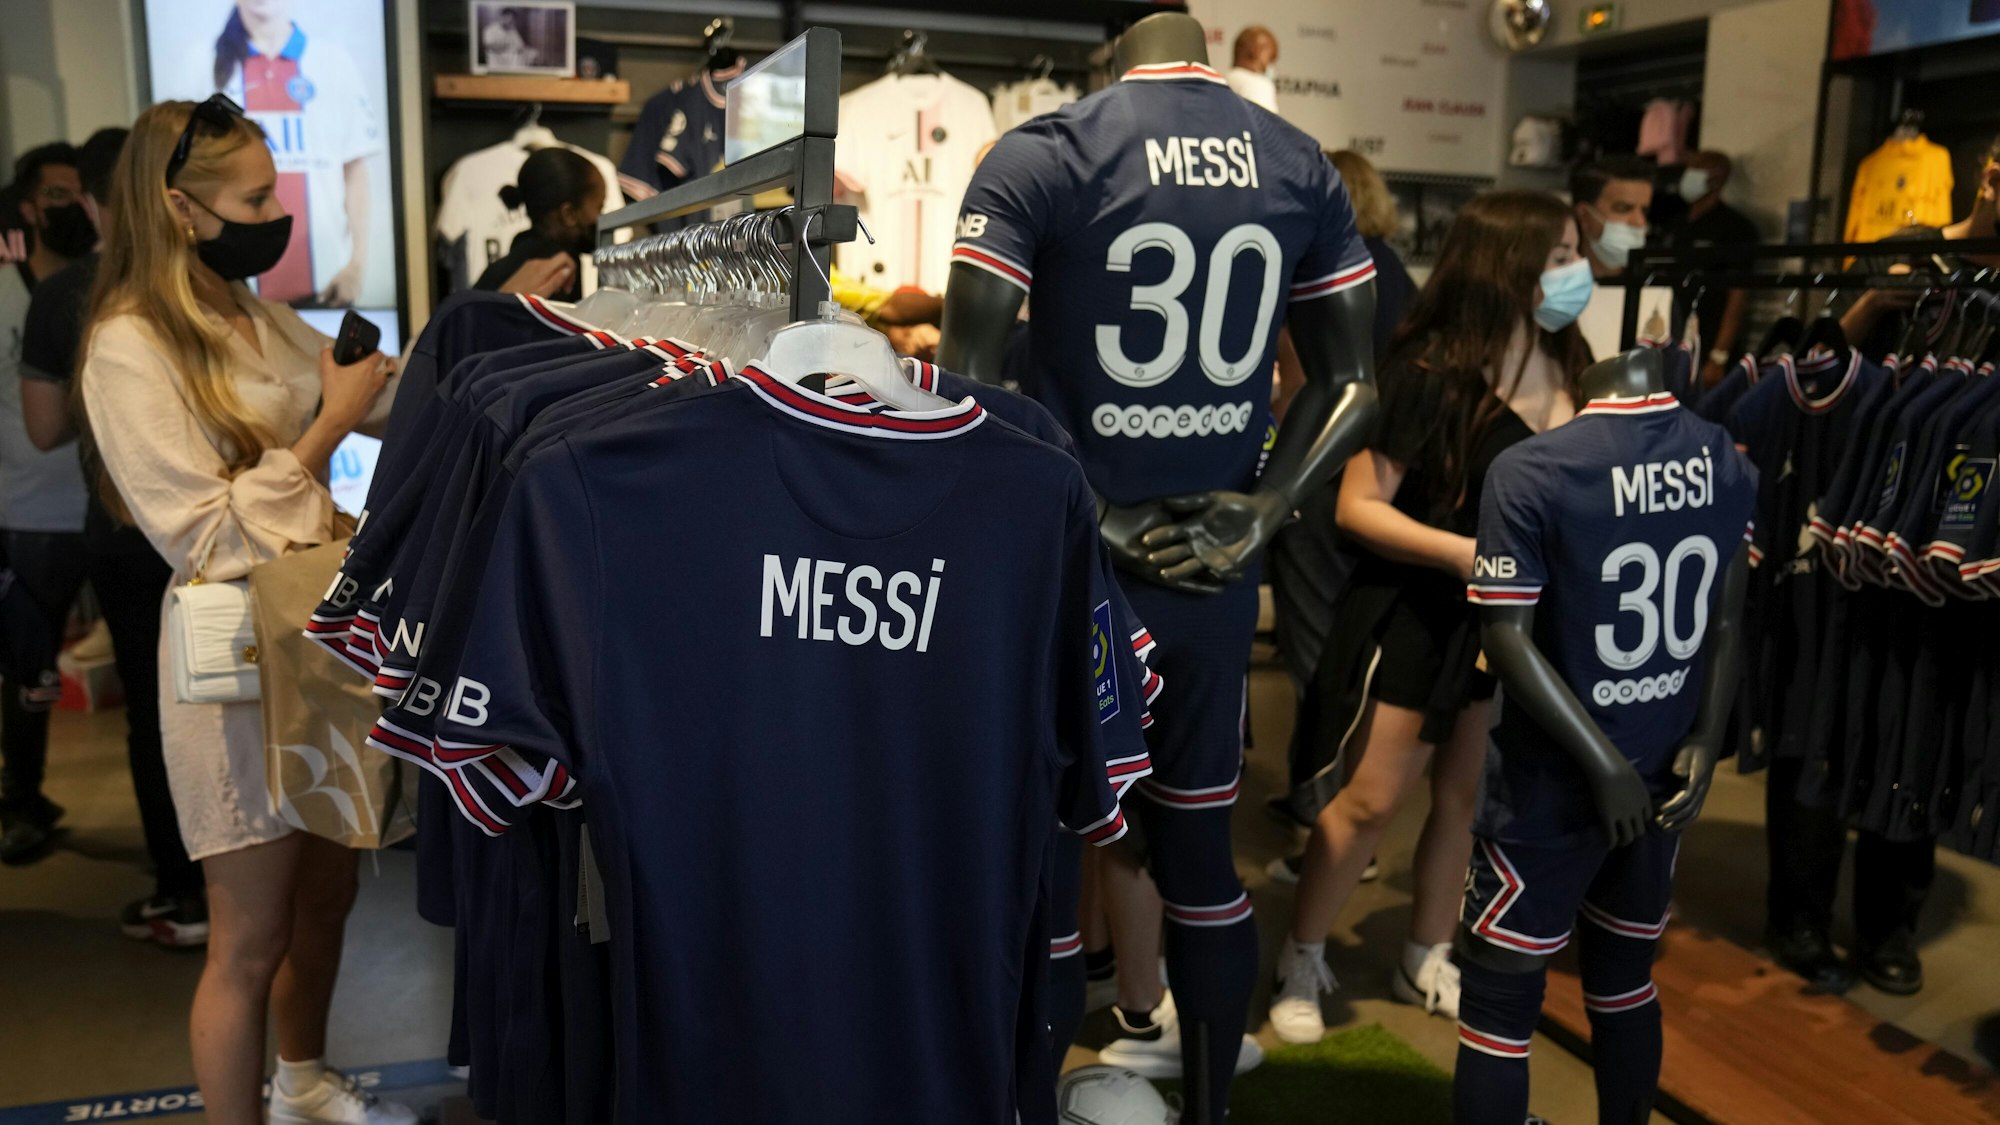 Fans schauen sich das Trikot von Lionel Messi im Fanshop von PSG an.